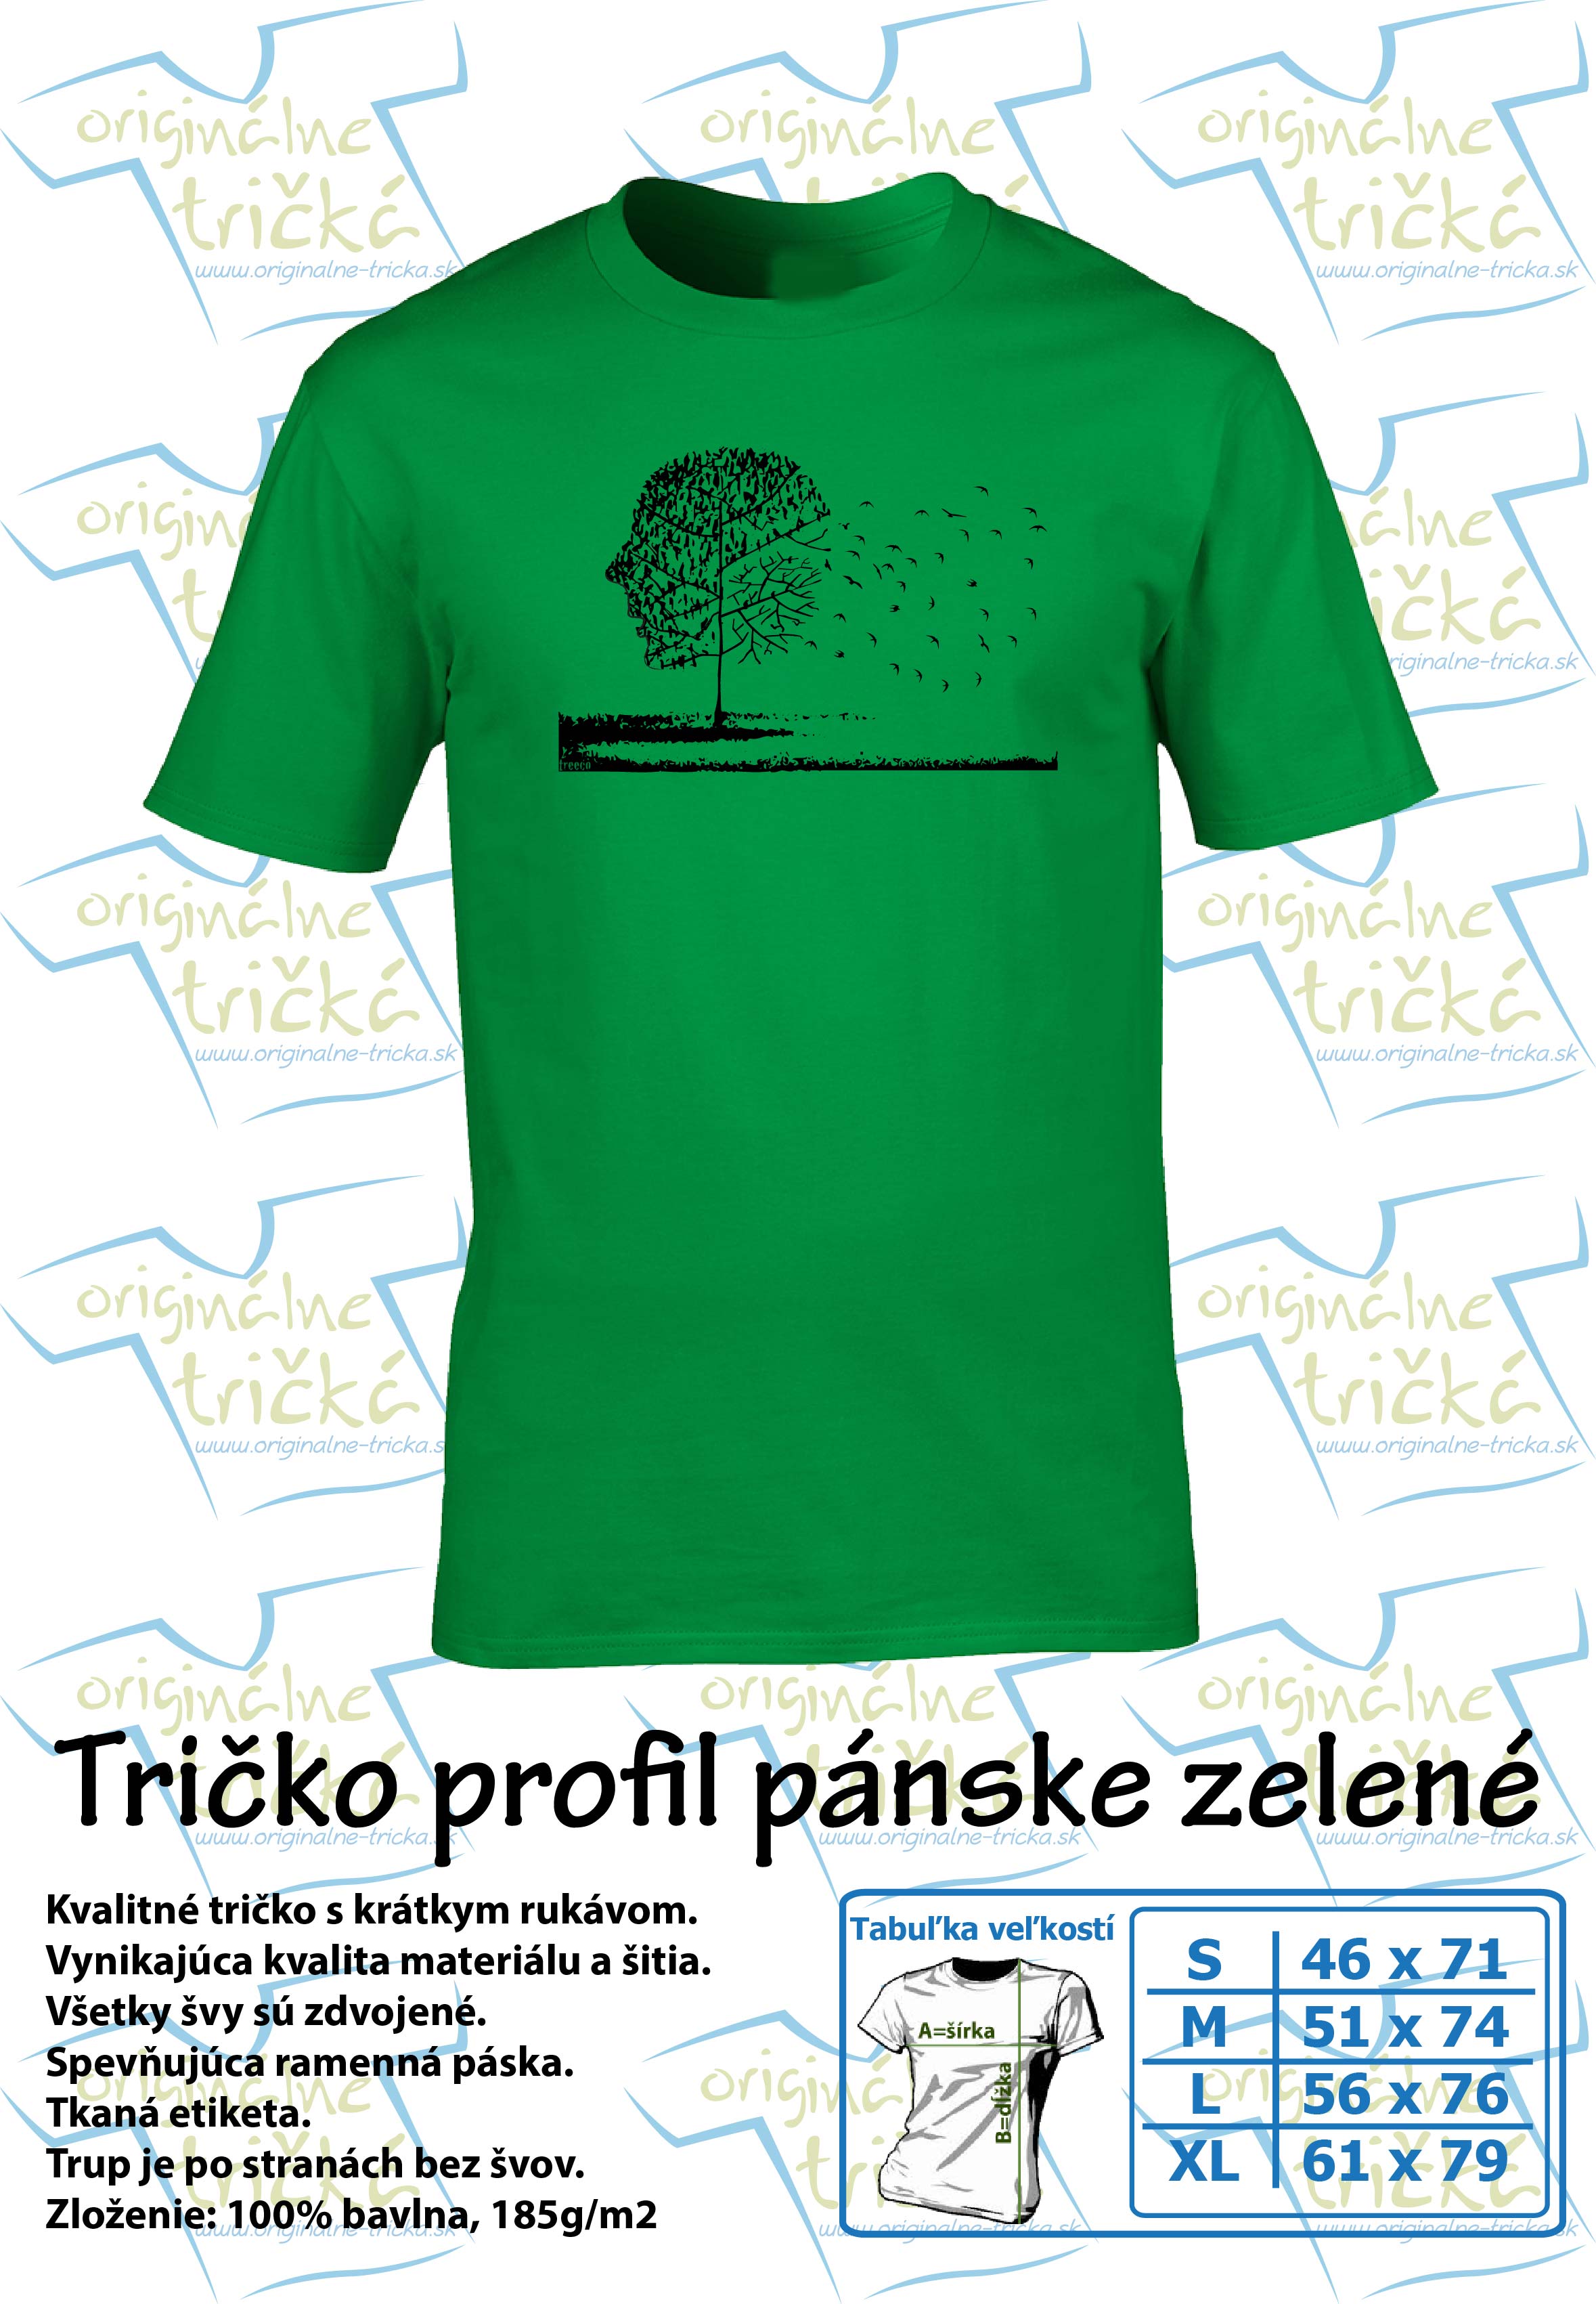 Tričko profil pánske zelené